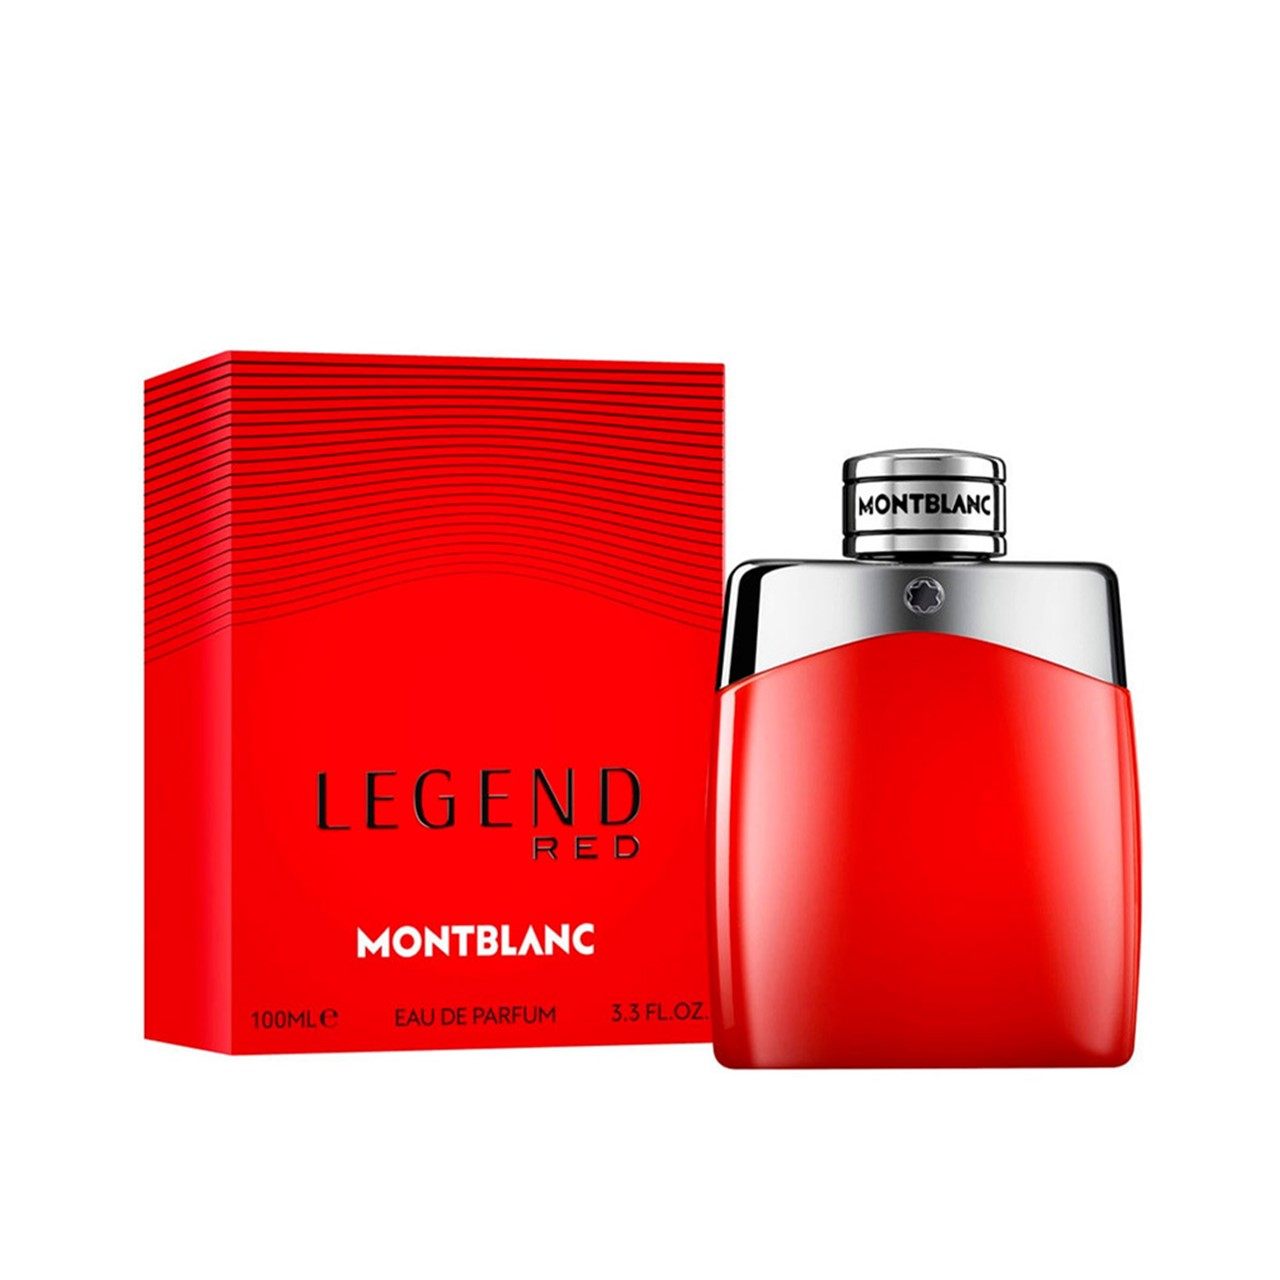 Montblanc Legend Red Eau de Parfum 100ml (3.3 fl oz)